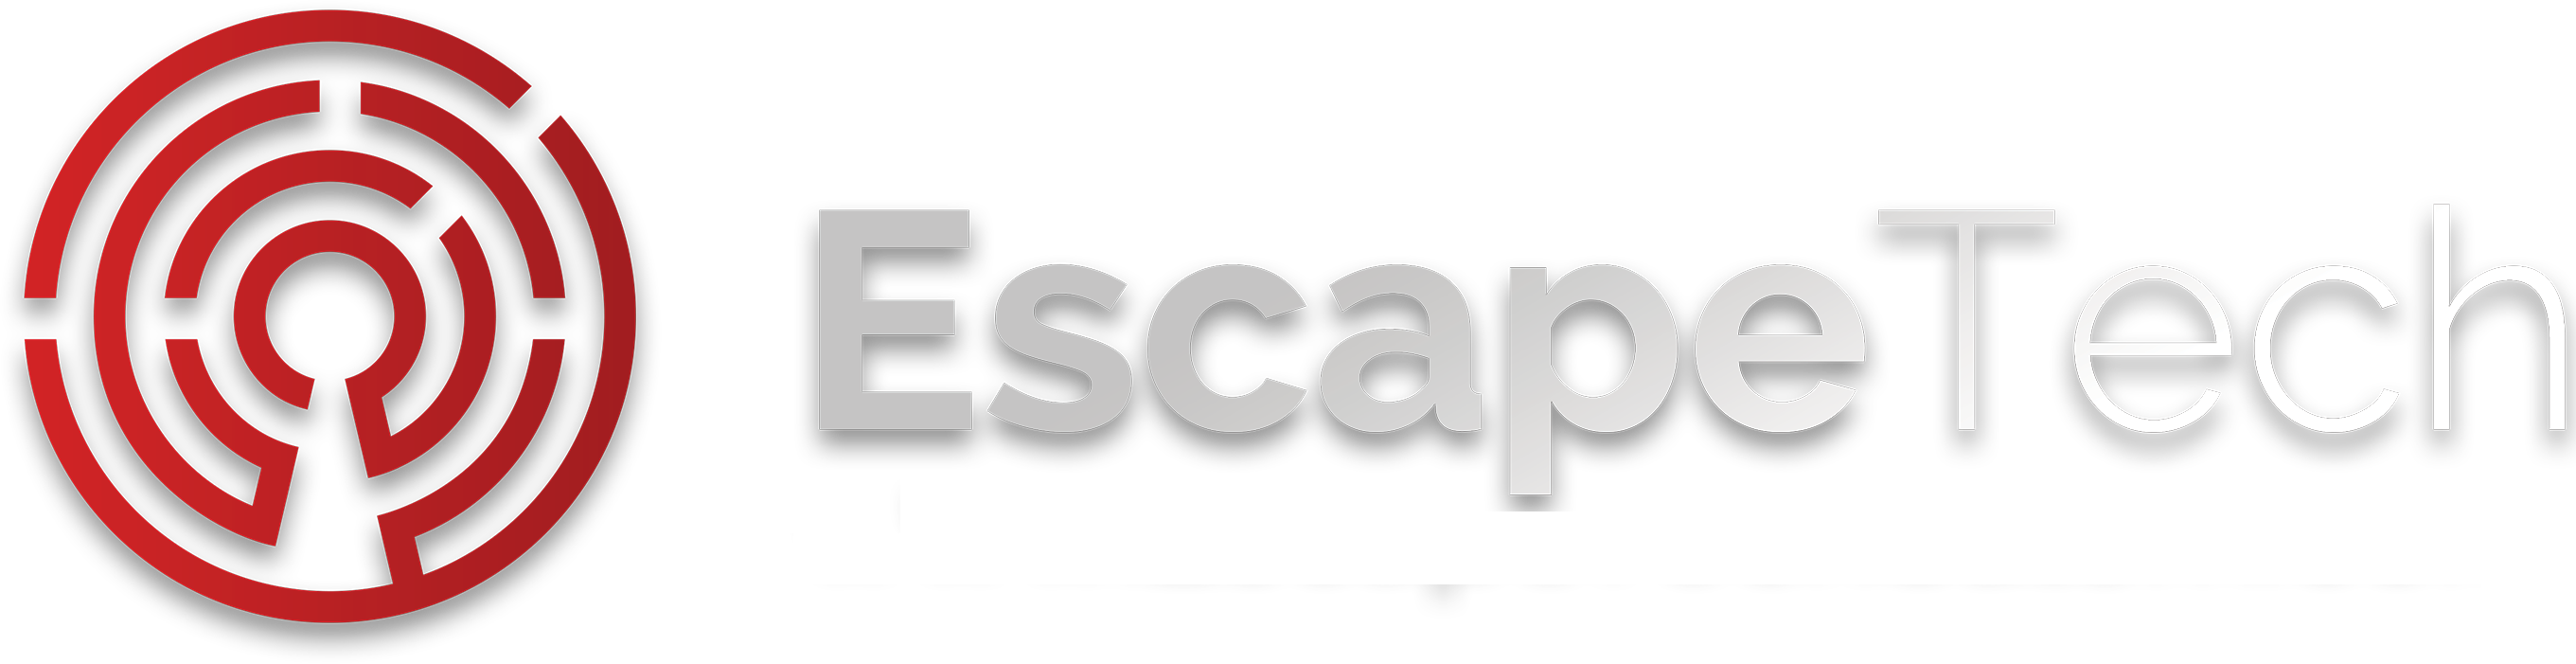 Escape Tech logo